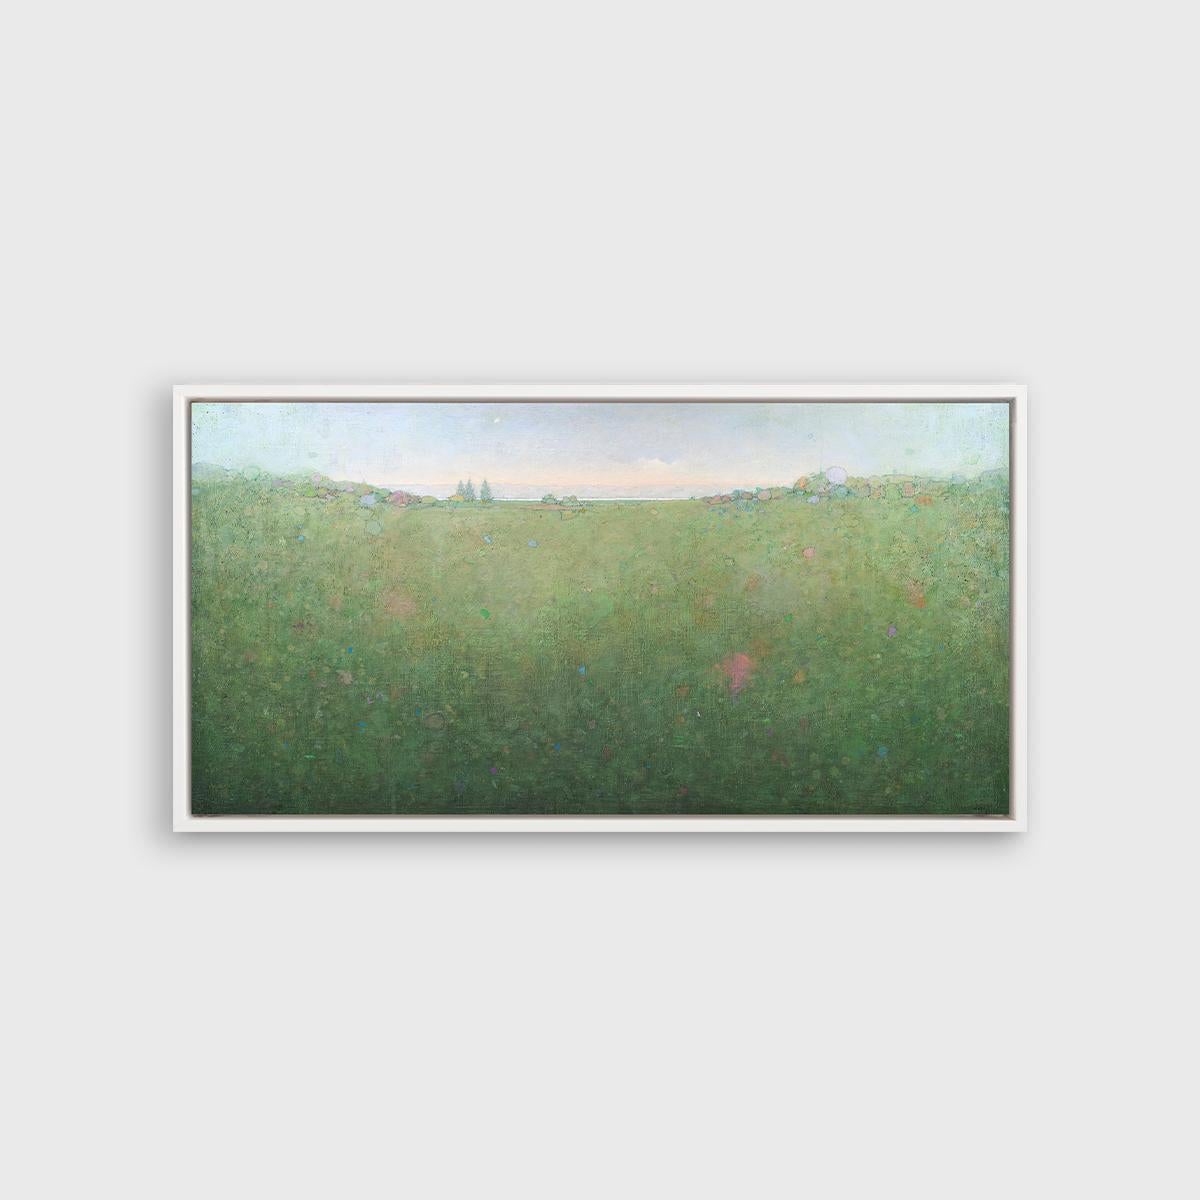 Ce paysage abstrait imprimé en édition limitée par Elwood Howell présente une palette de verts froids et de bleus pâles. La ligne d'horizon élevée caractéristique de l'artiste forme une très légère vallée au centre, bordée de formes telles que des